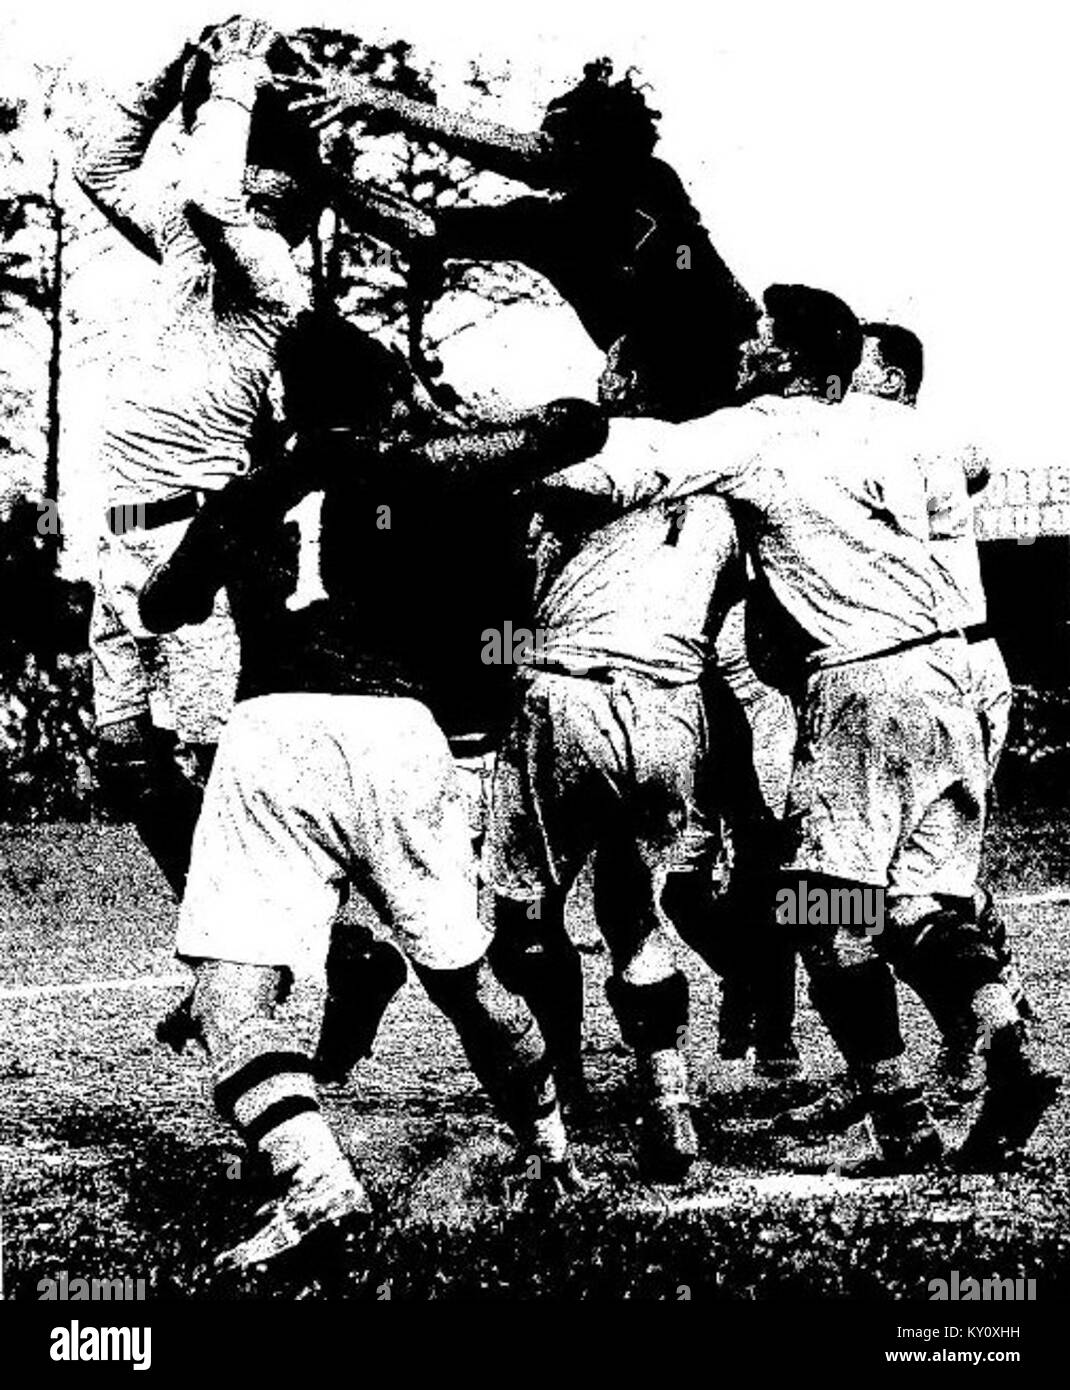 Finale du championnat de France de rugby 1931, saut de Barrère (foncé), qui essaie de ravir la balle d'un lyonnais Stock Photo